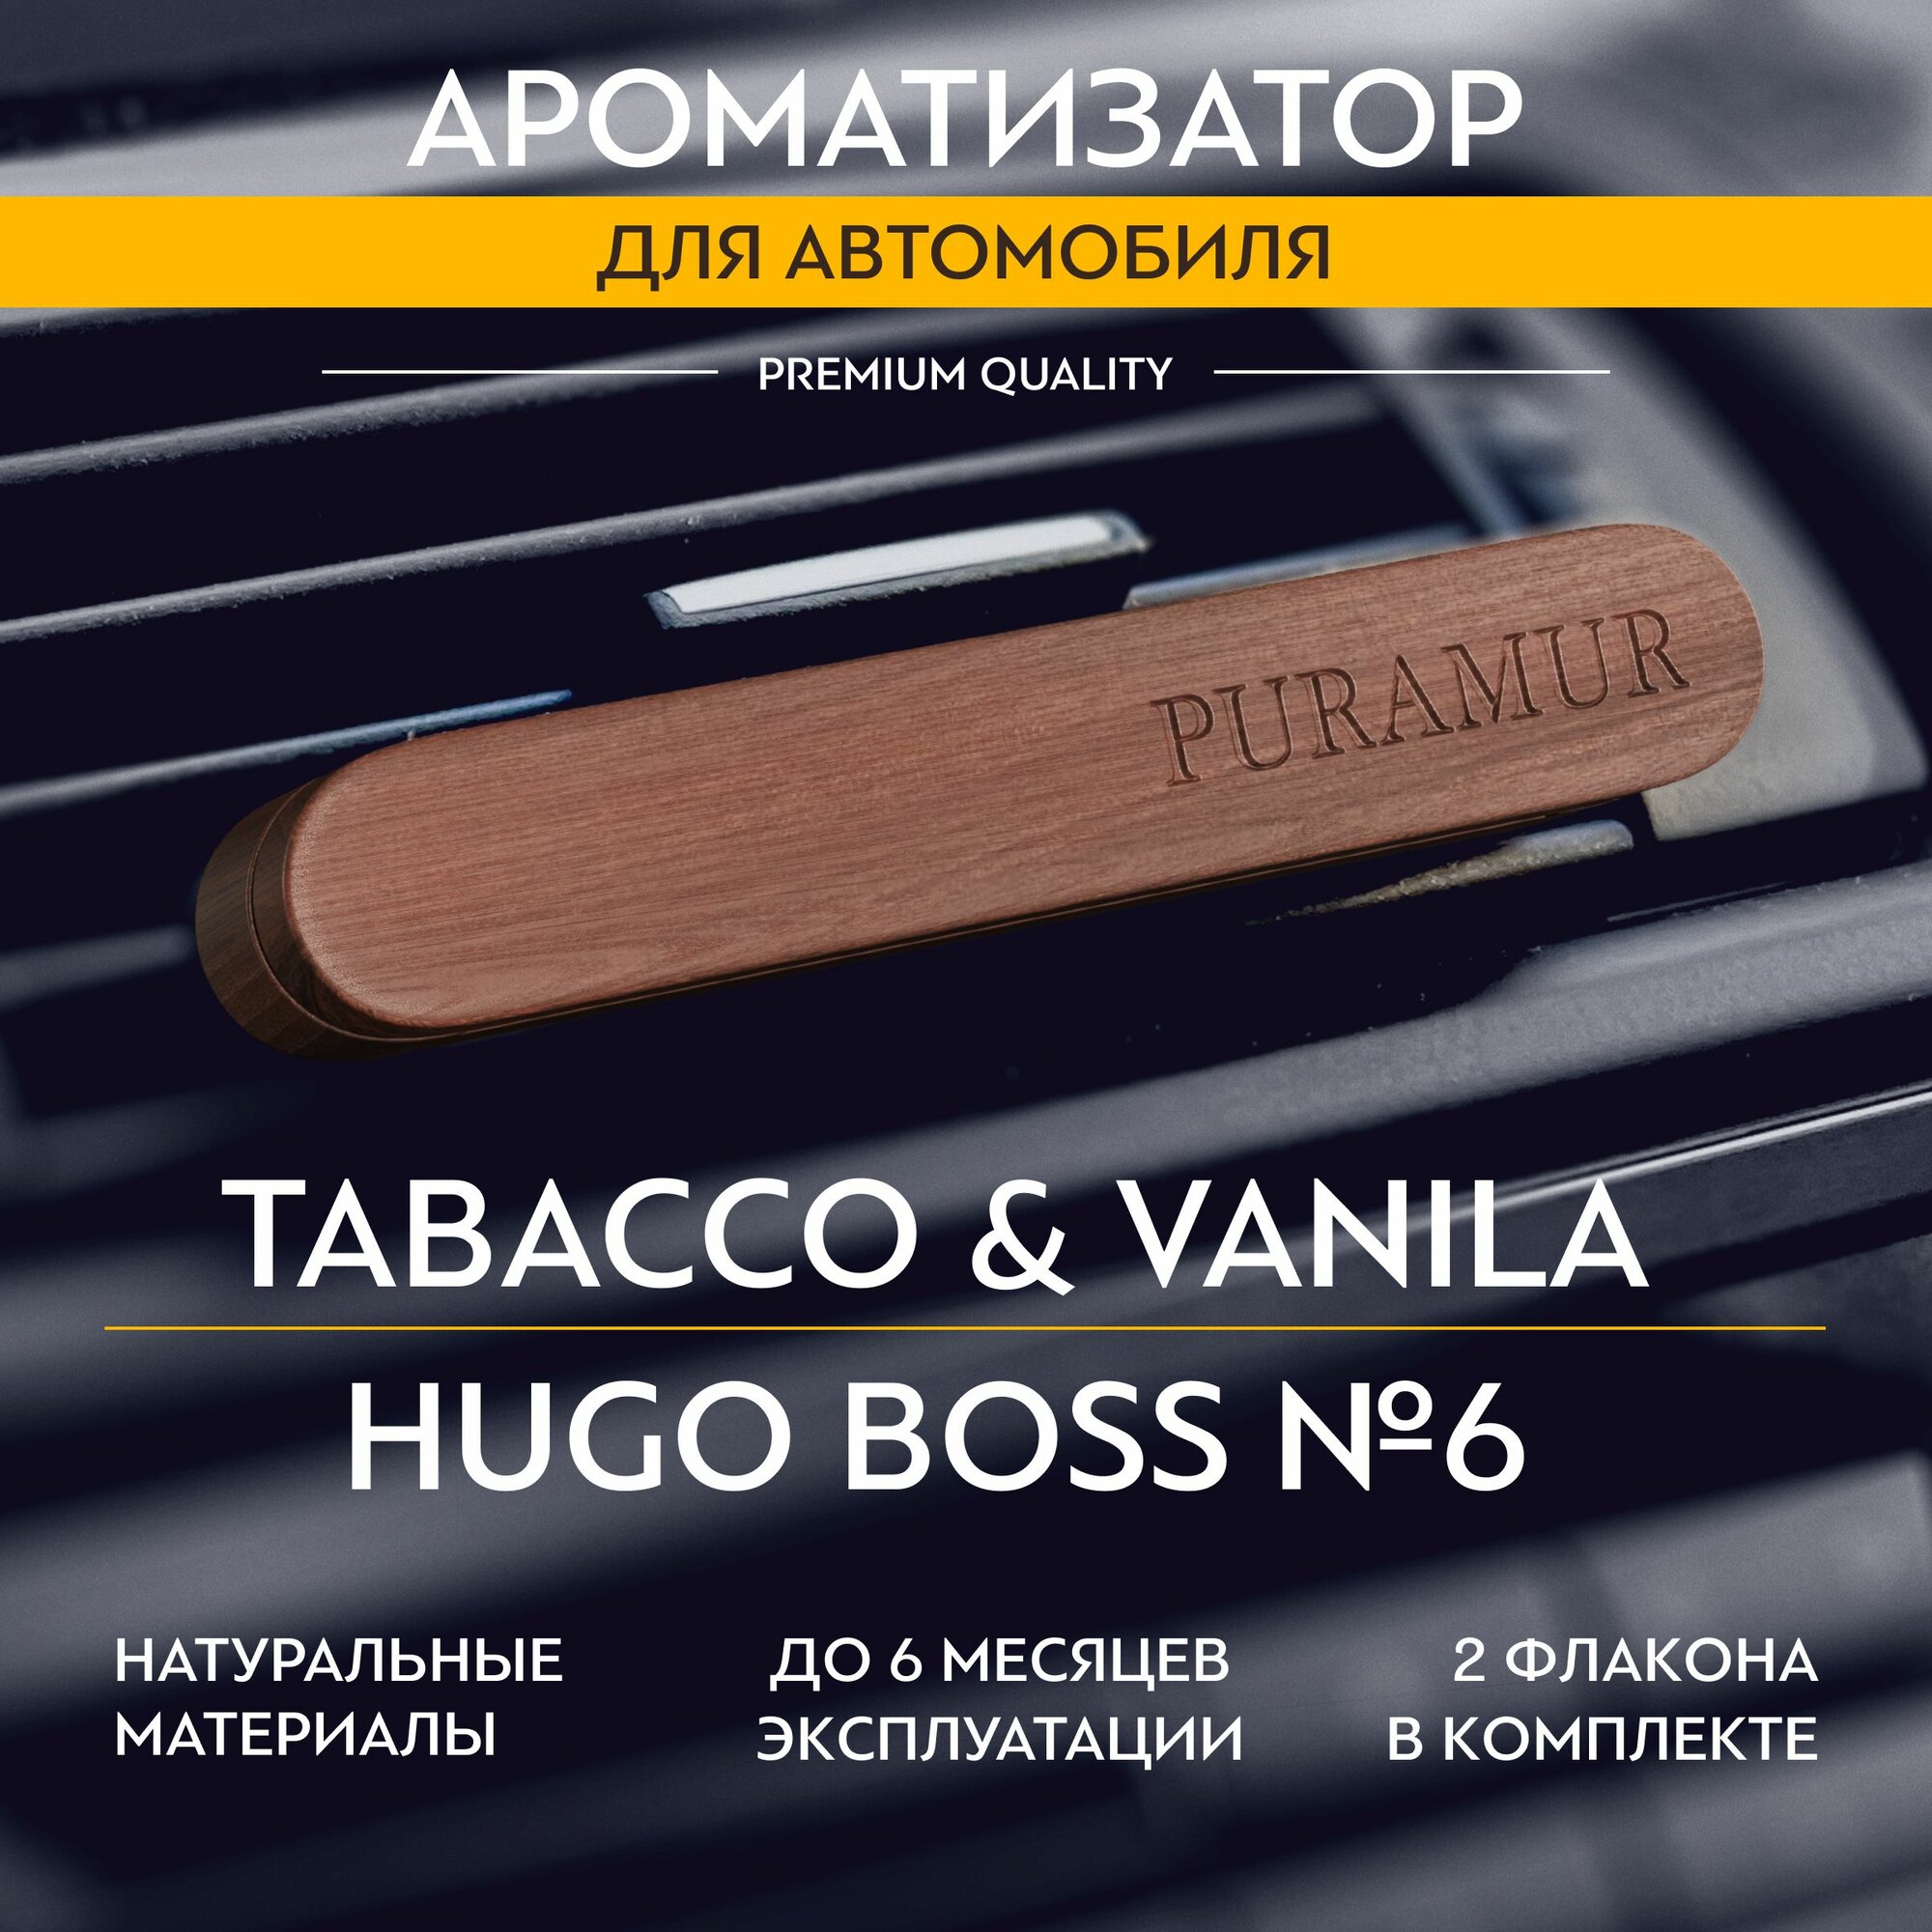 Ароматизатор для автомобиля деревянный, табак и ваниль и Hugo Boss, 5 мл